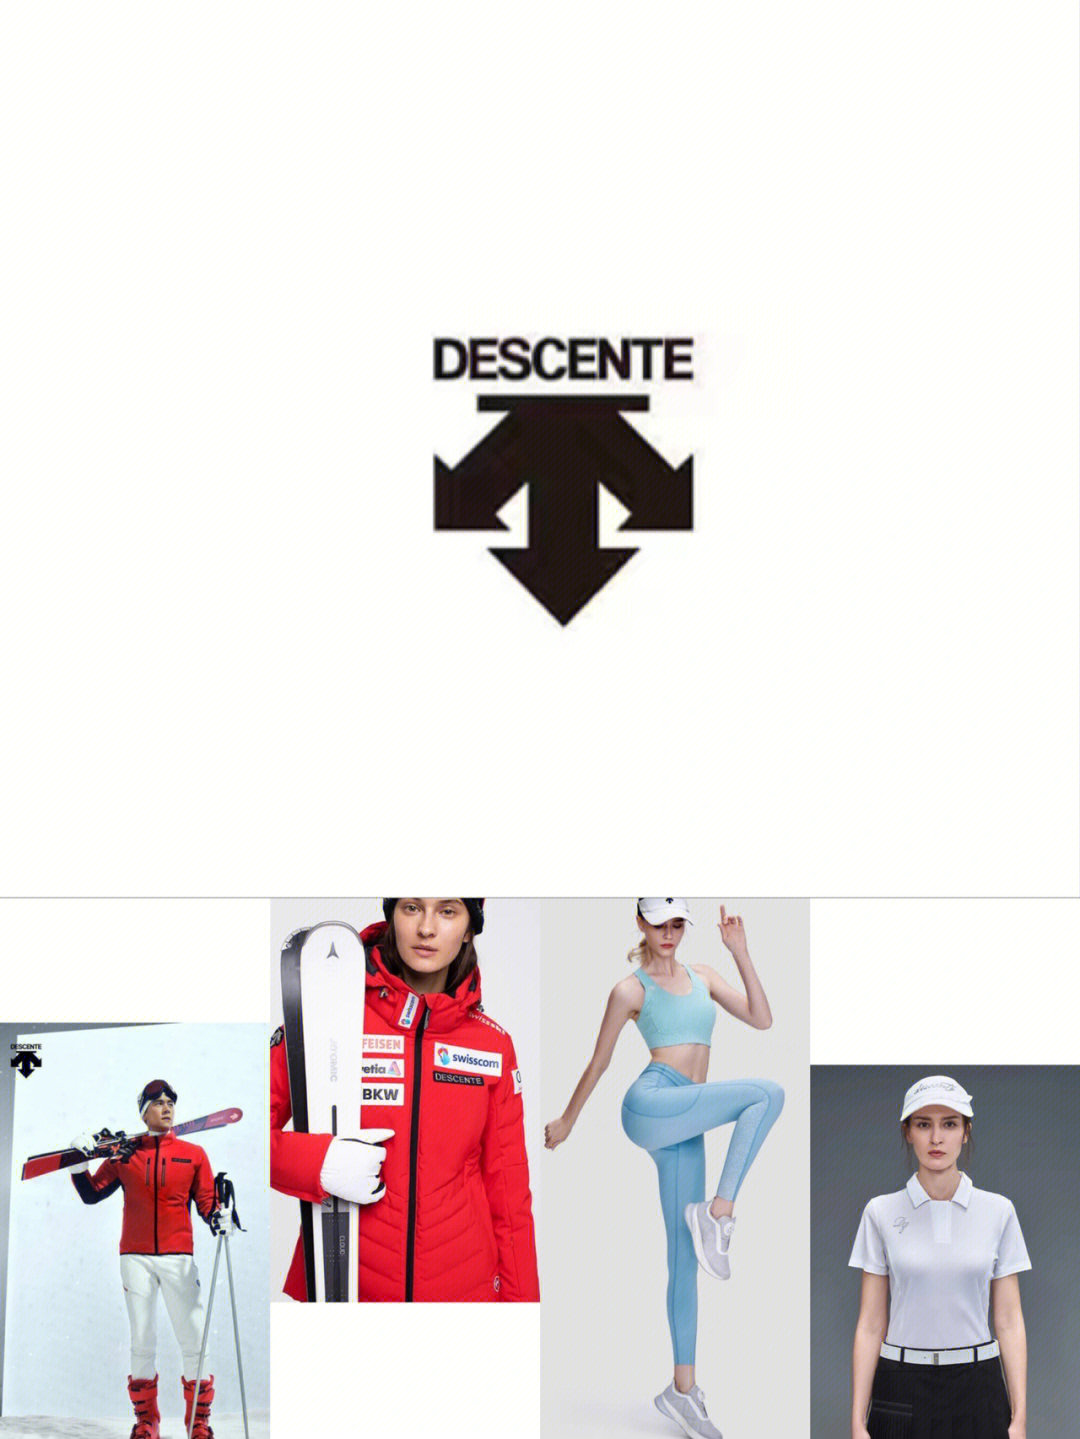 迪桑特logo有几种图片